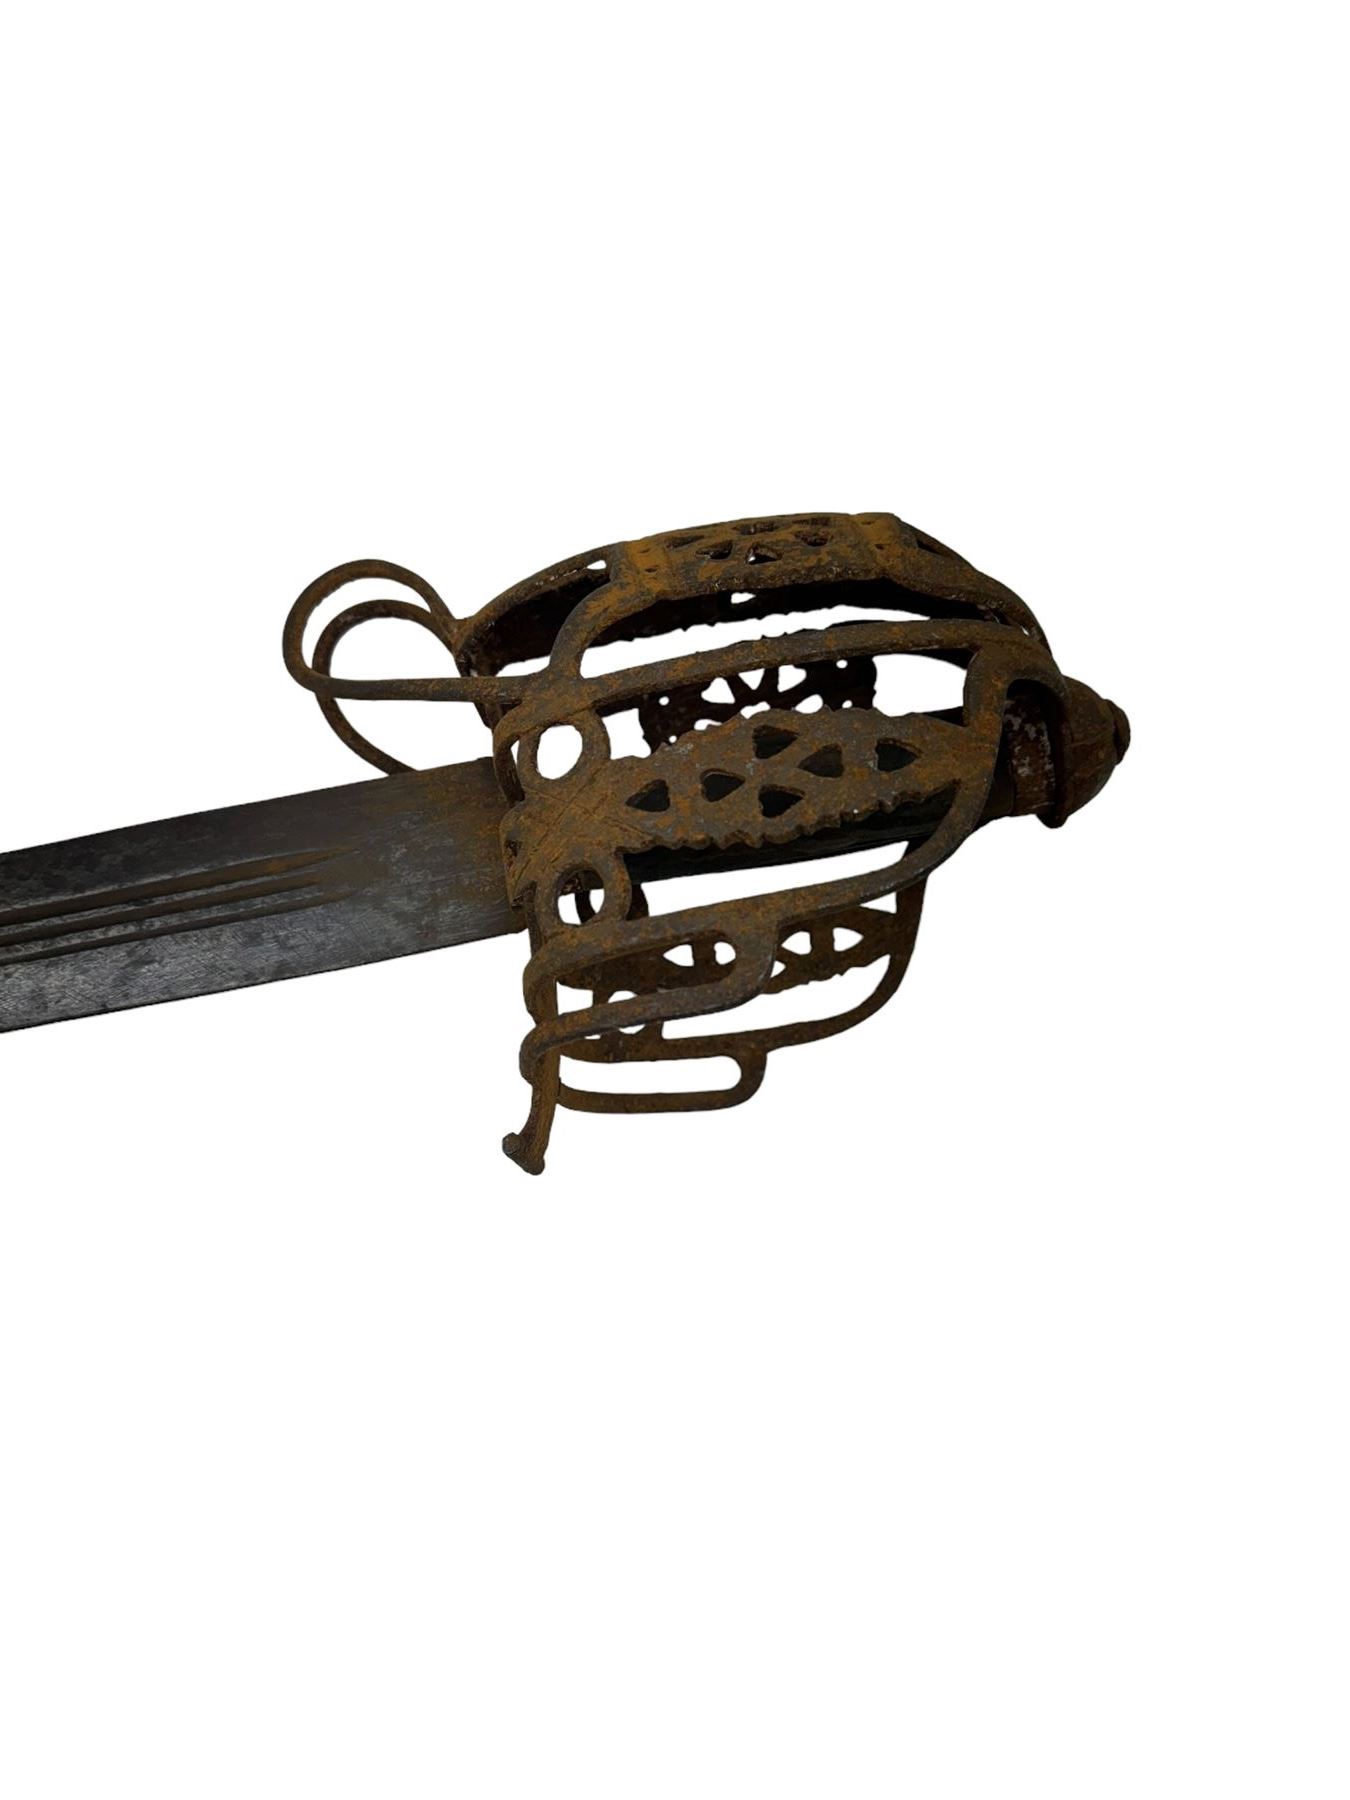 Scottish basket-hilted sword - Image 2 of 7